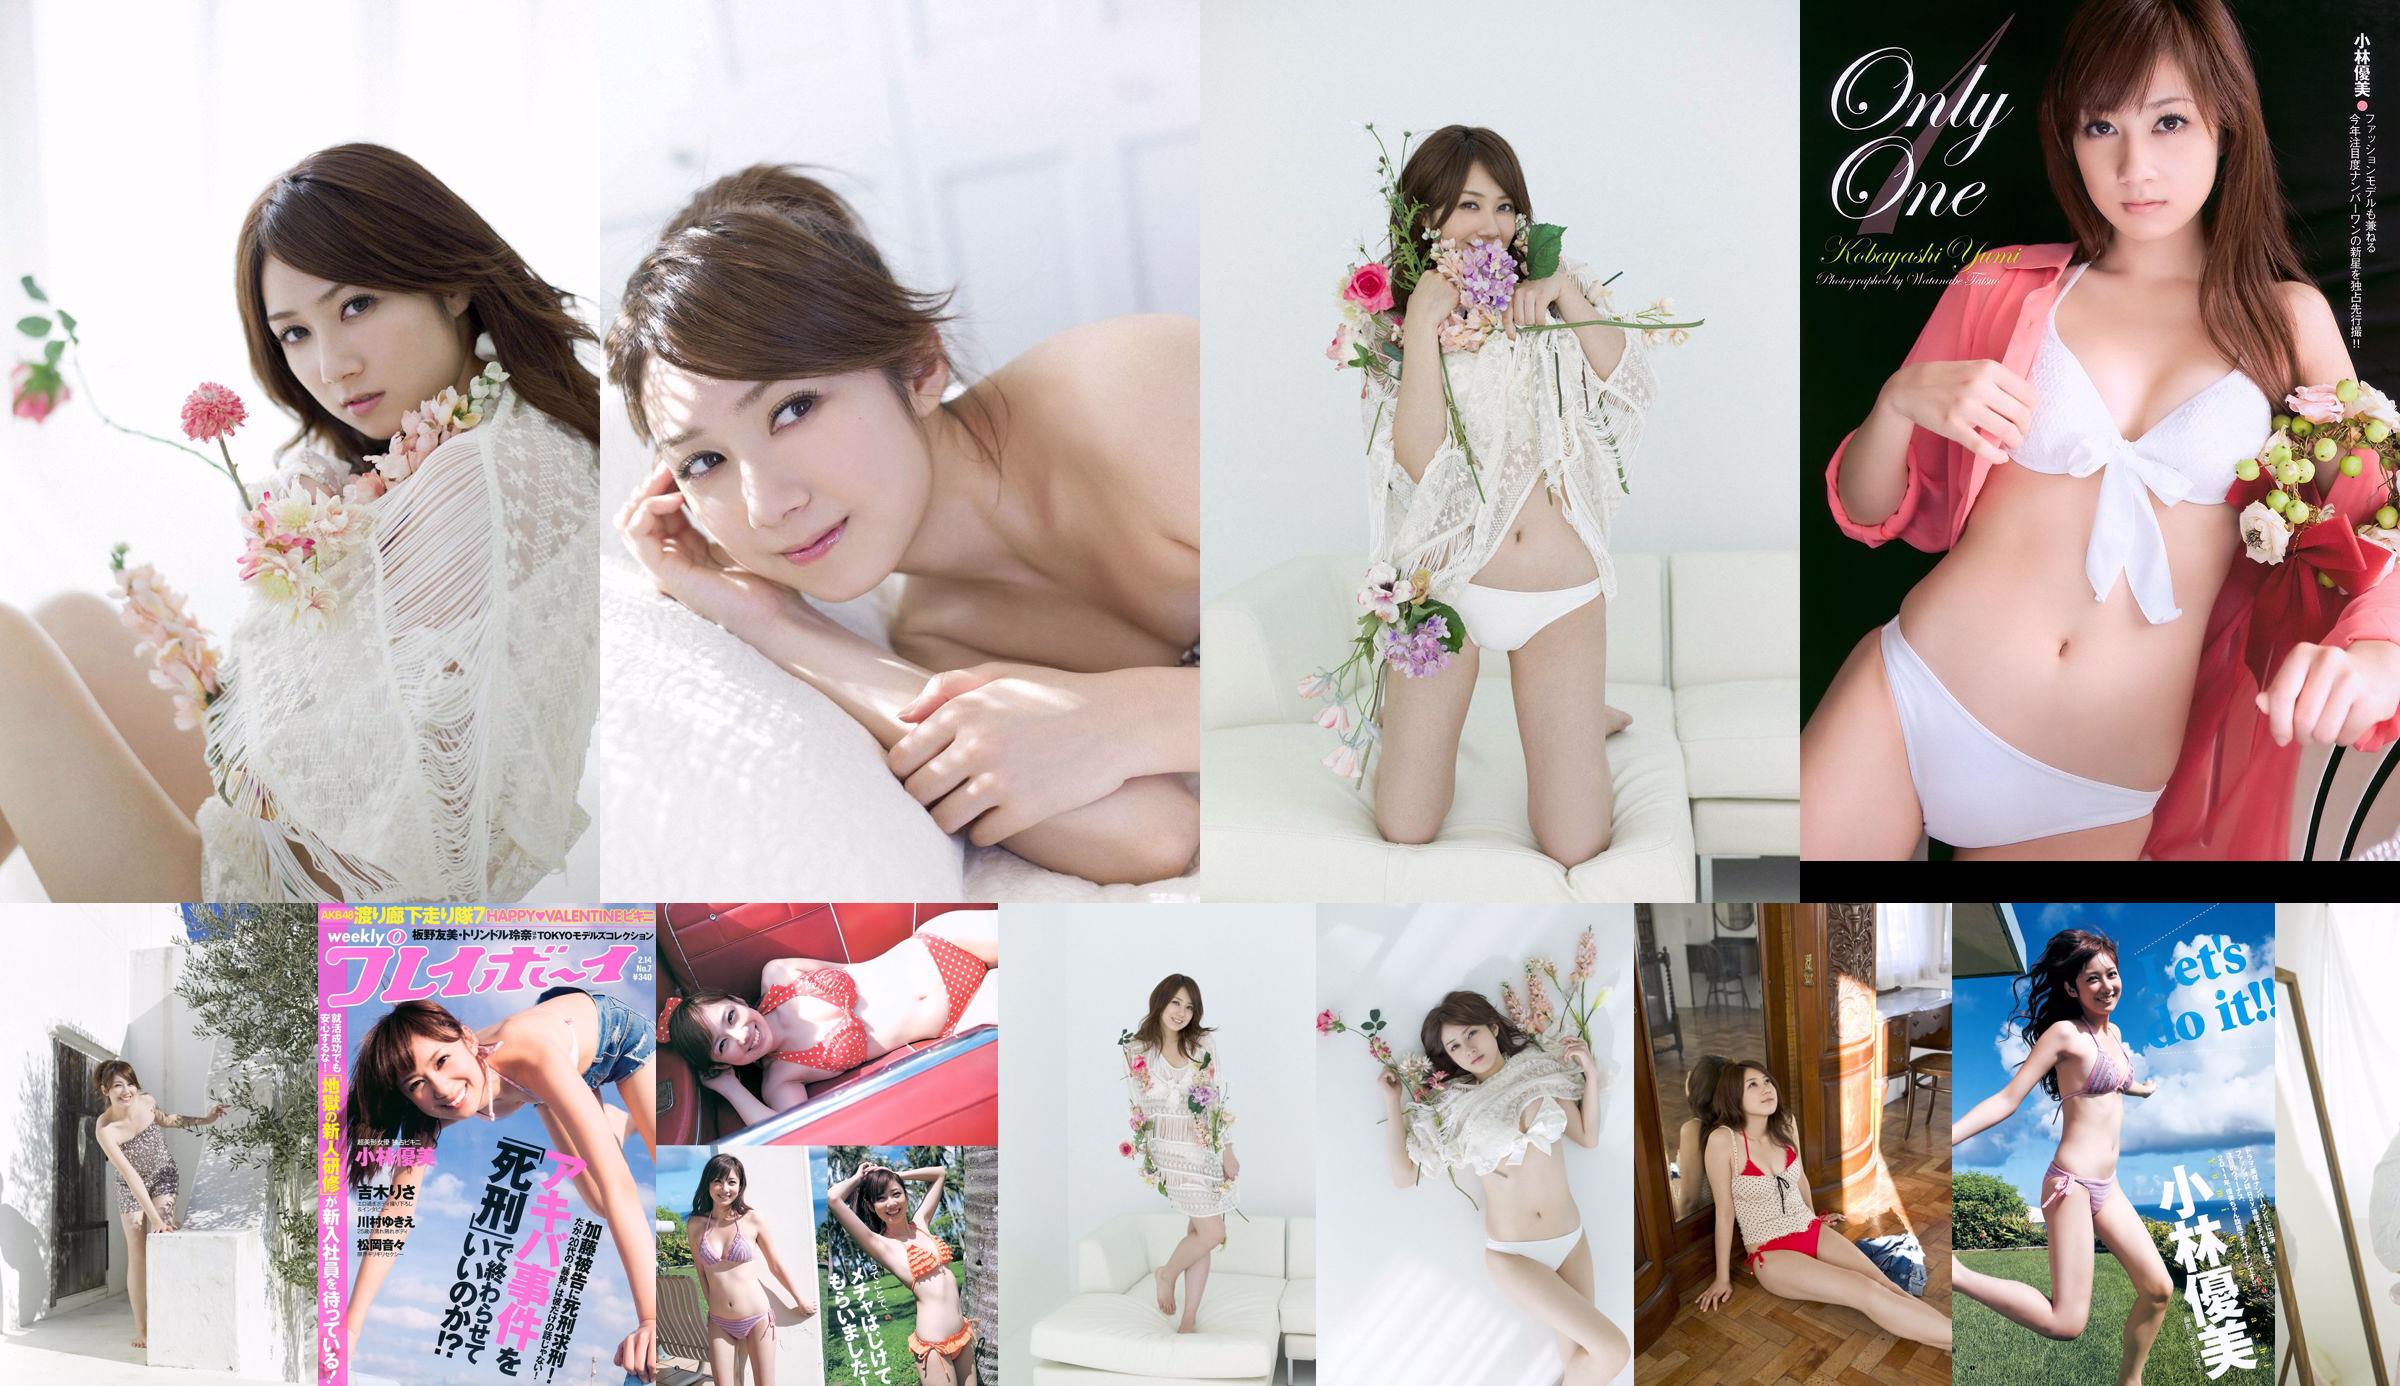 Kobayashi Yumi Shinoda Mariko [Wekelijkse Young Jump] 2011 No.11 Photo Magazine No.dd1cd8 Pagina 1